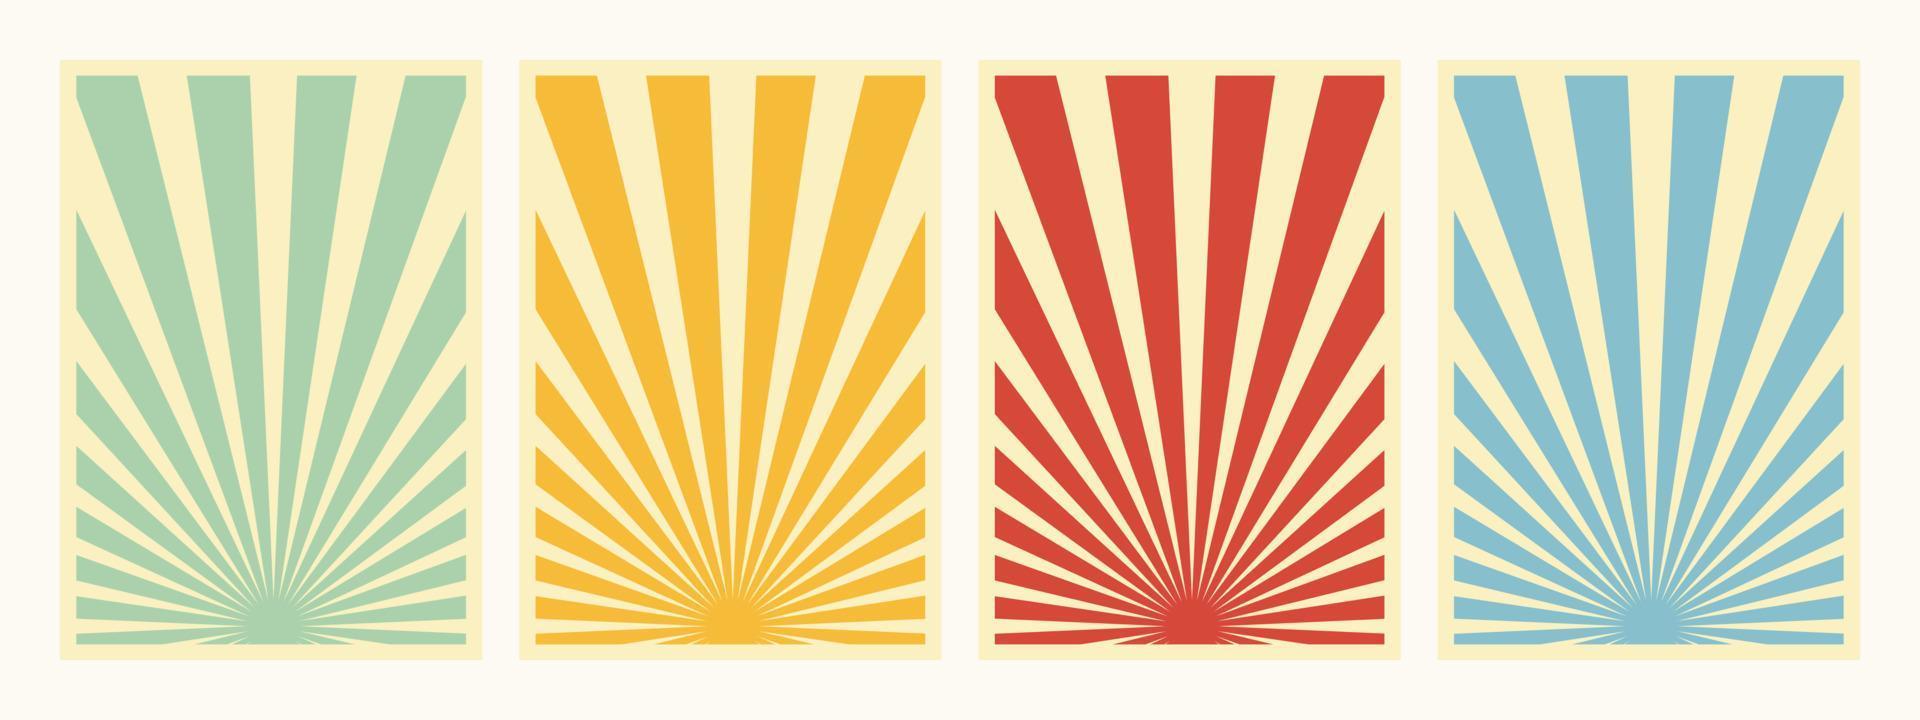 4er-Set, Retro-inspirierte vertikale Poster, verschiedene Sunburst-Promo-Propaganda-Hintergrundvorlagen. grüne, gelbe, rote und blaue Papiercollagenhintergründe. vektor